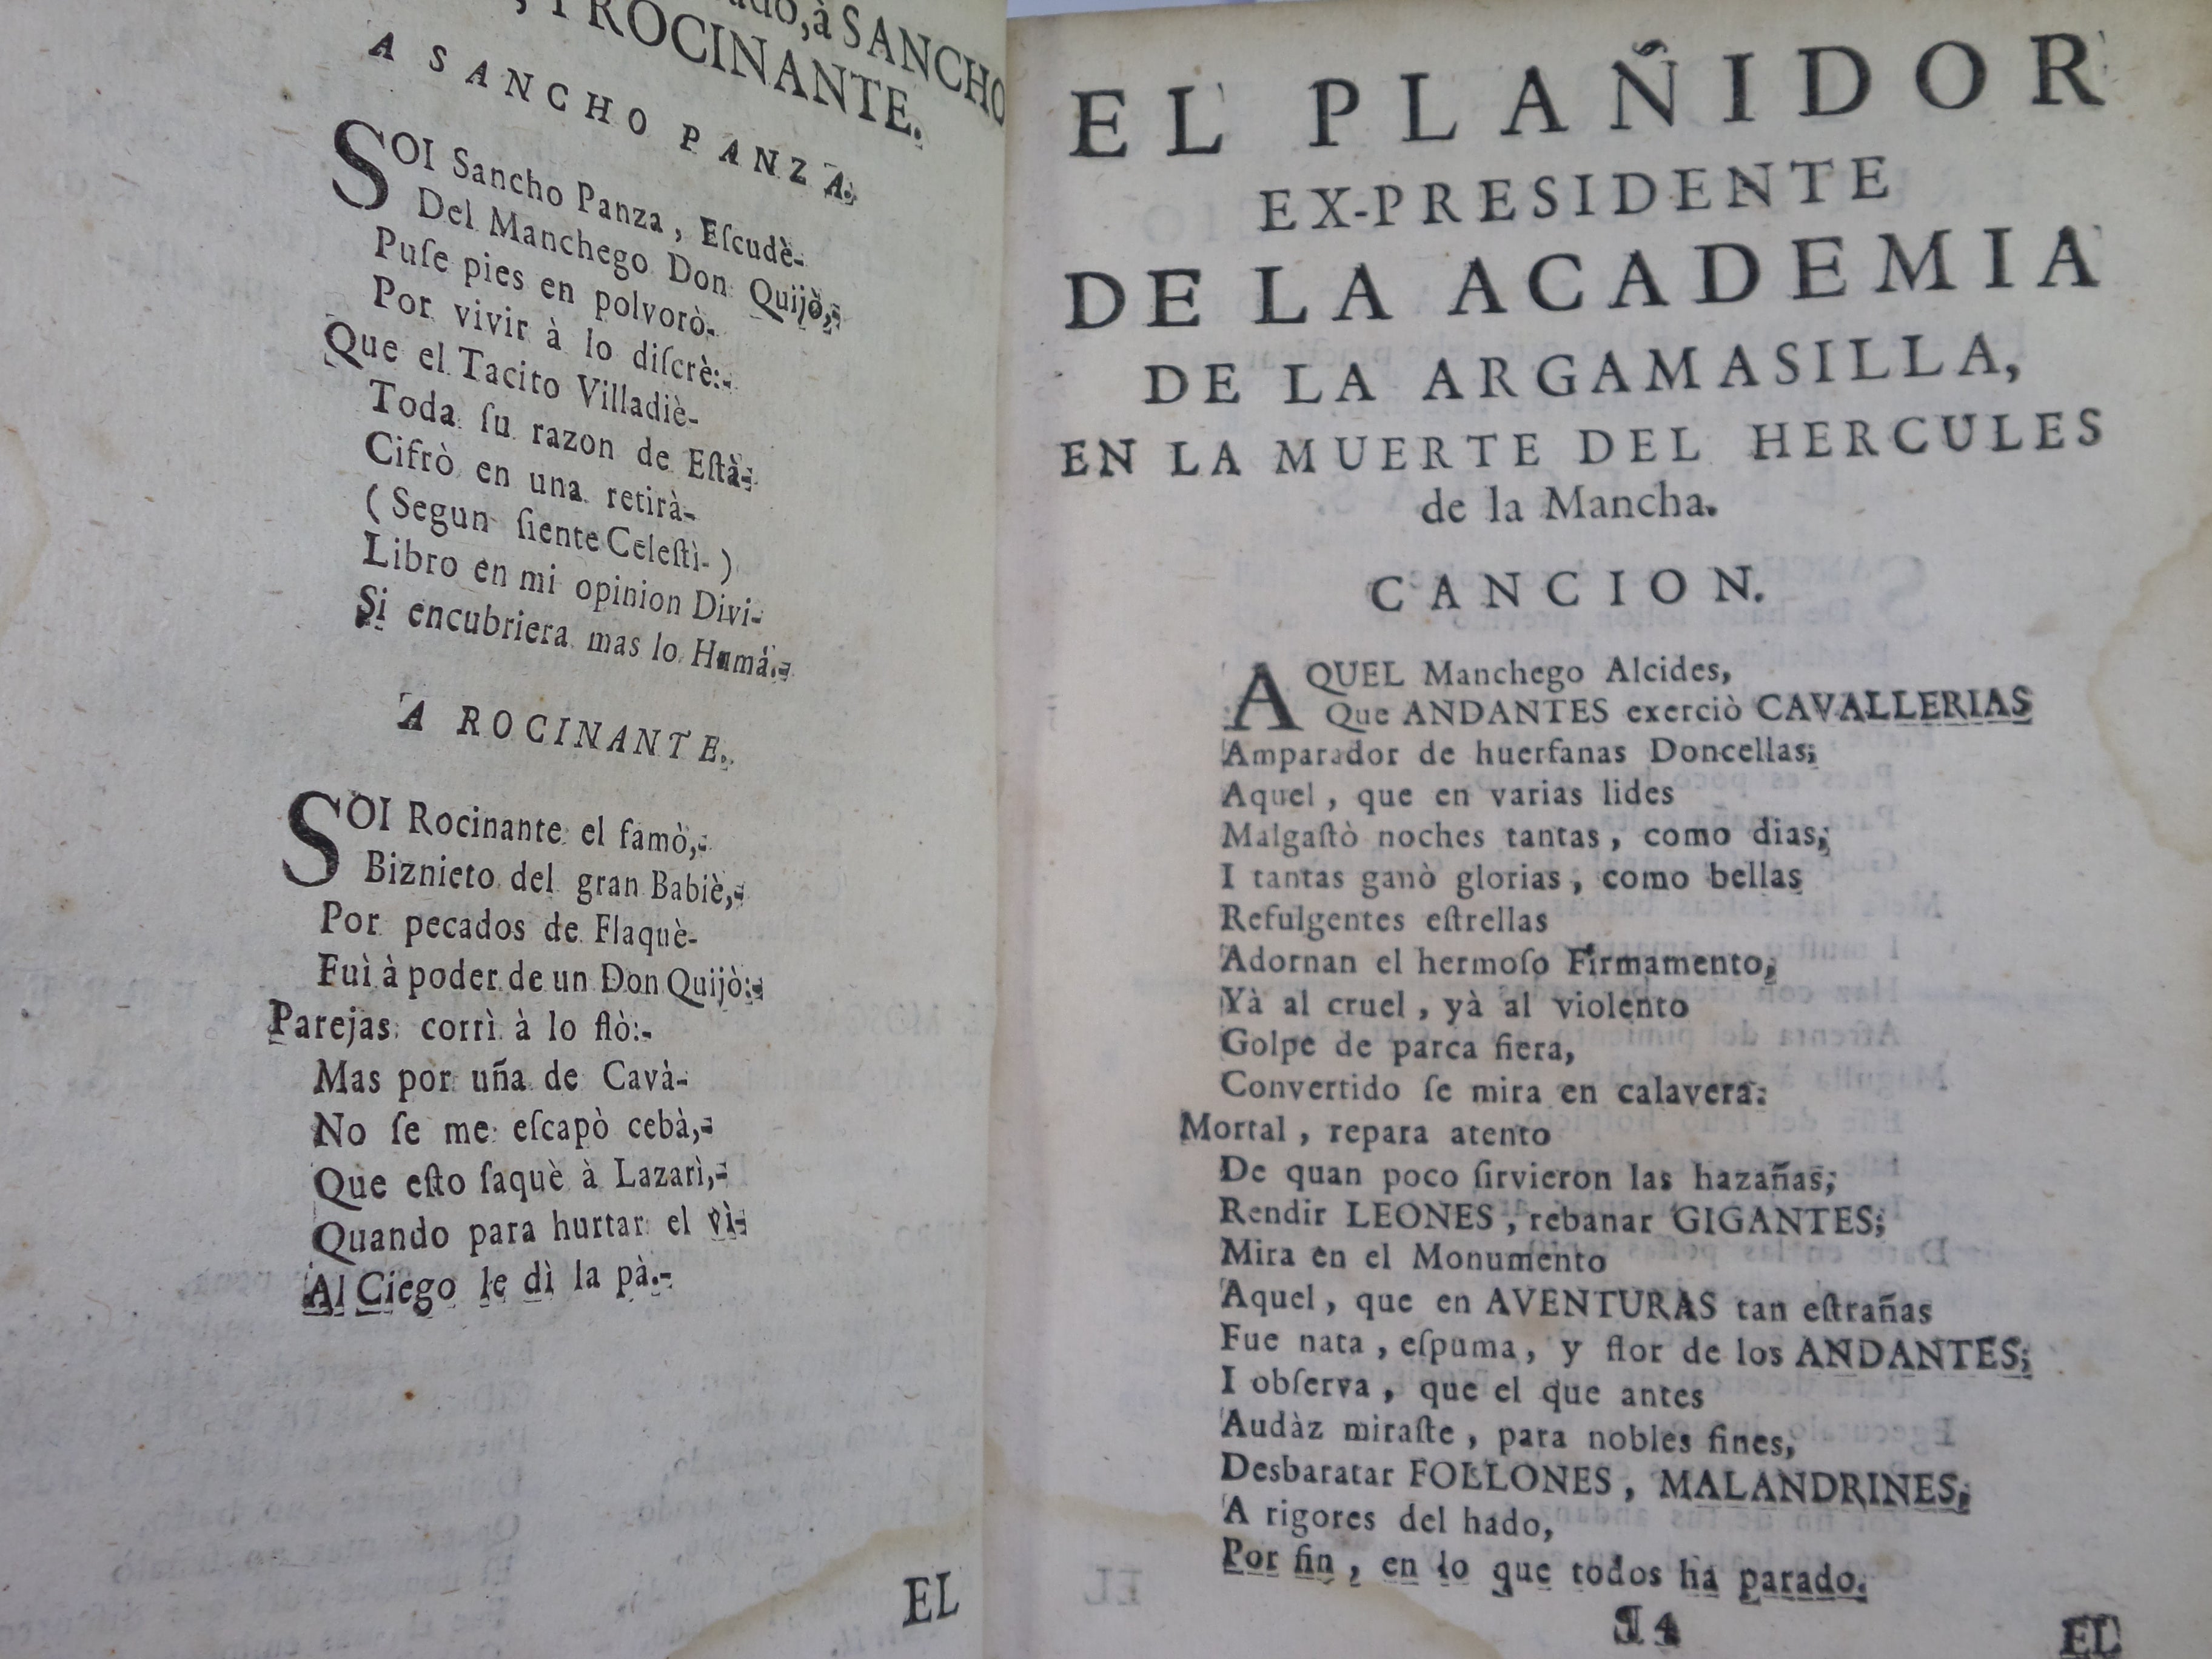 VIDA Y HECHOS DEL INGENIOSO CAVALLERO DON QUIXOTE DE LA MANCHA BY MIGUEL DE CERVANTES SAAVEDRA 1750